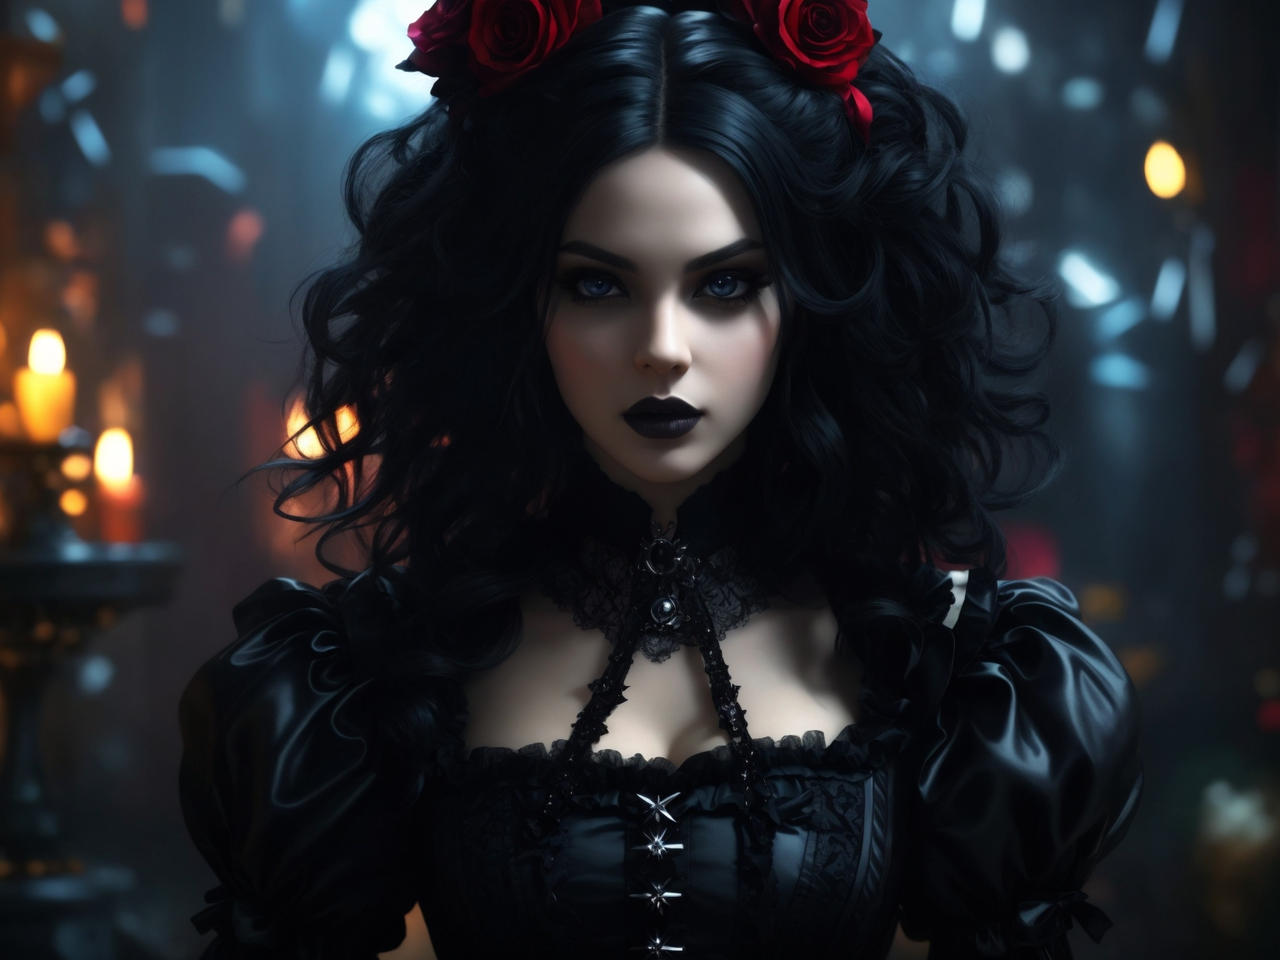 Goth Queen of Hearts by cuda1016 on DeviantArt